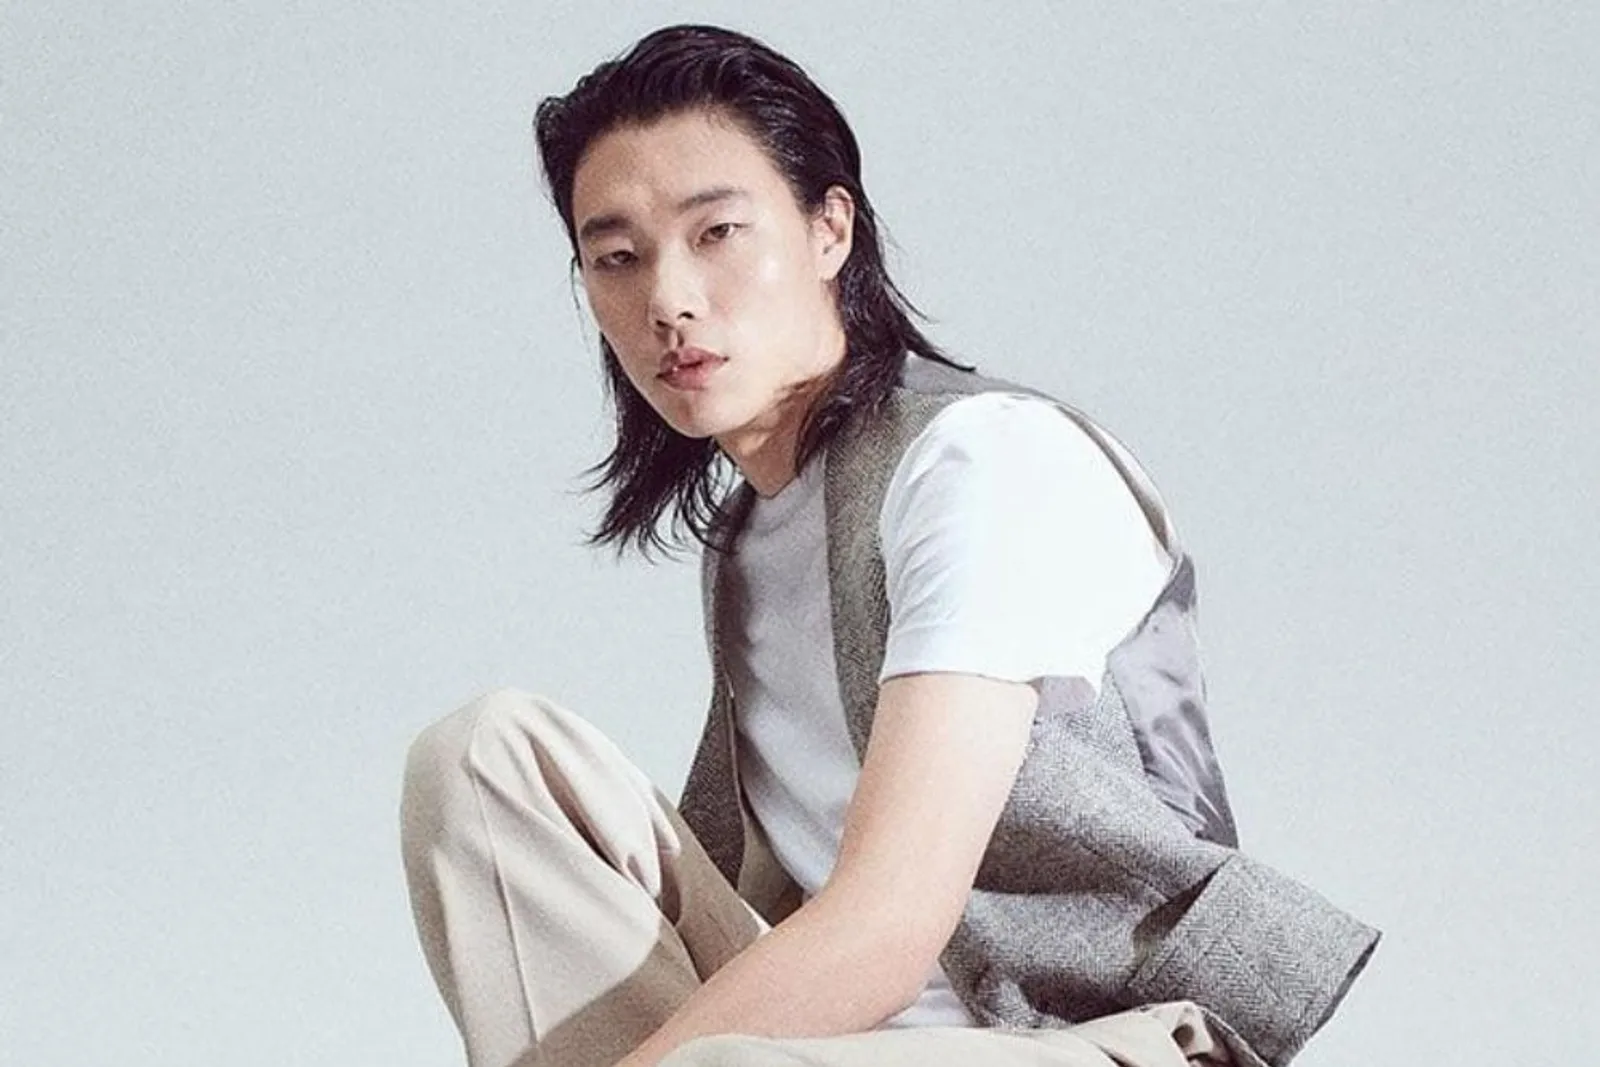 Gaya Aktor Korea dengan Rambut Pendek vs Gondrong, Bikin Susah Pilih!